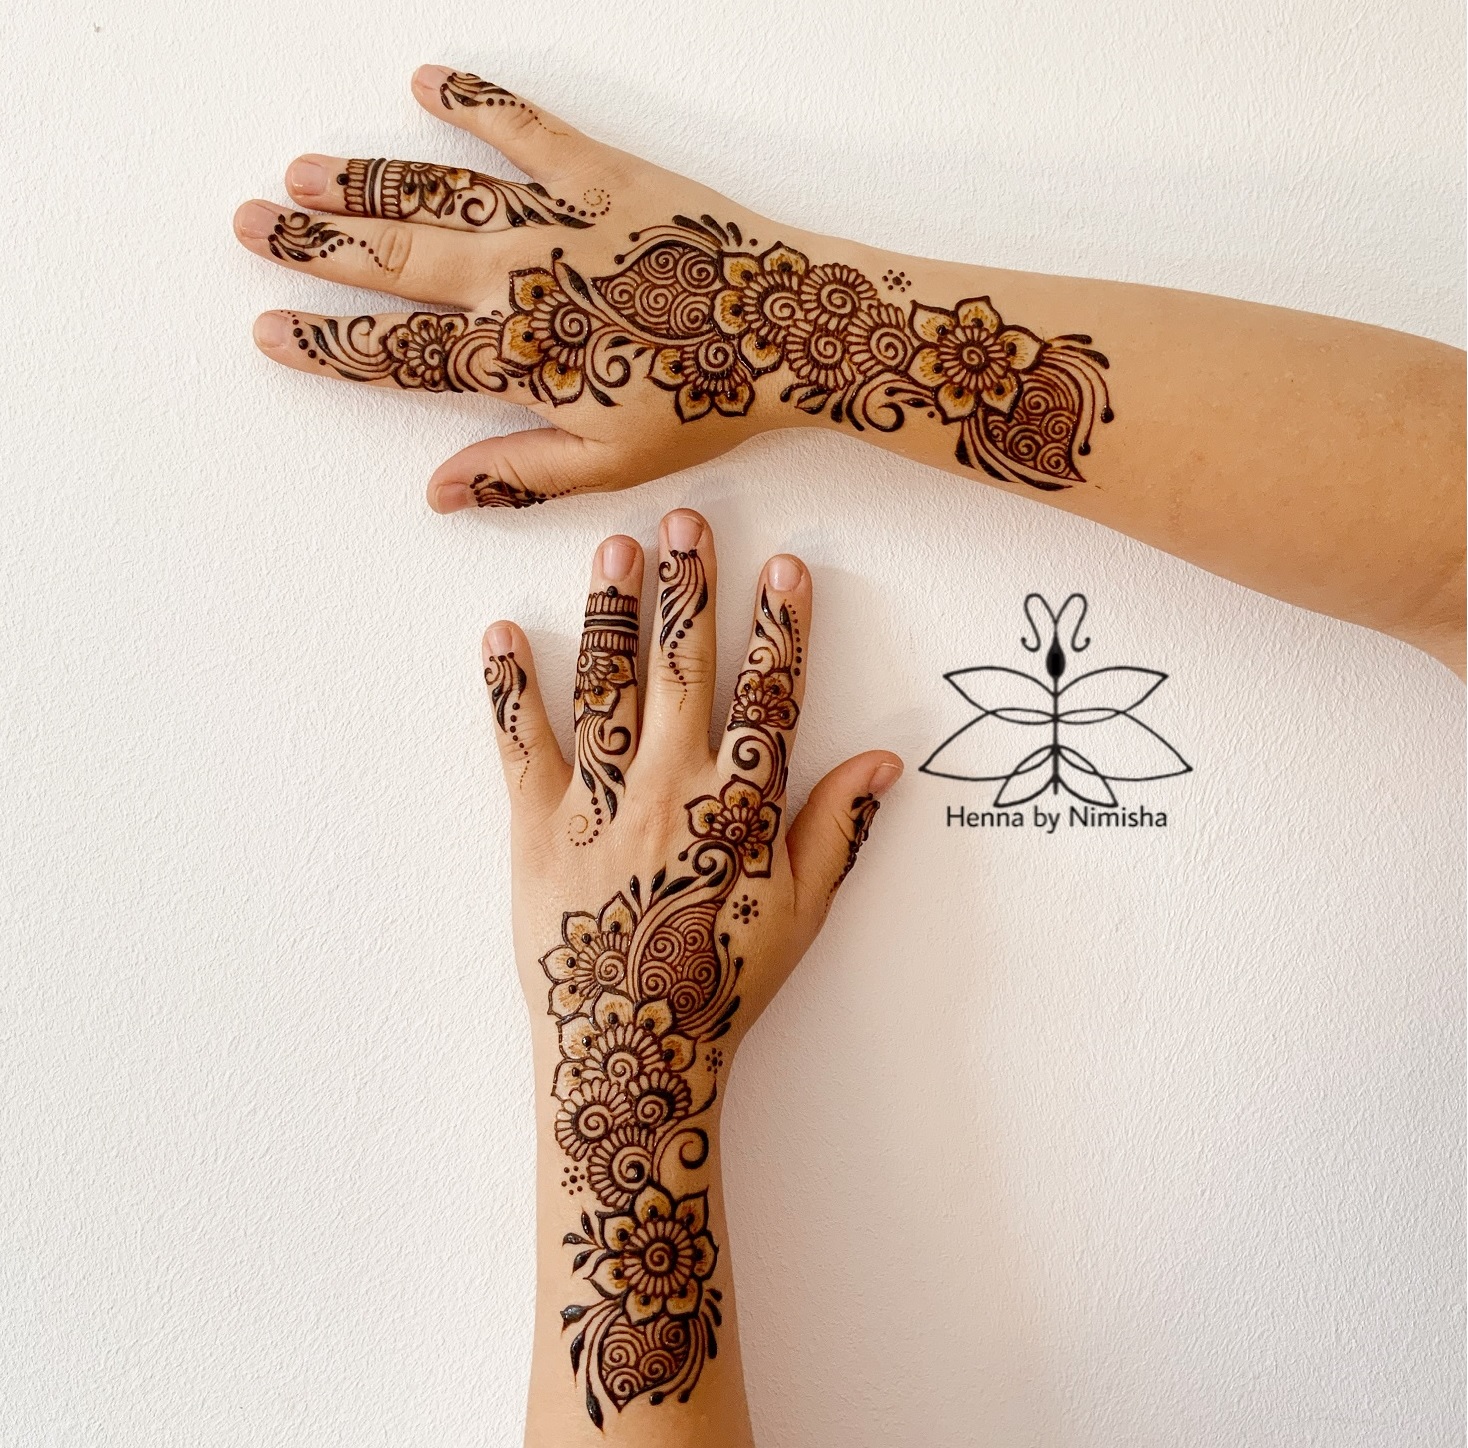 Workshop Henna-Kunst